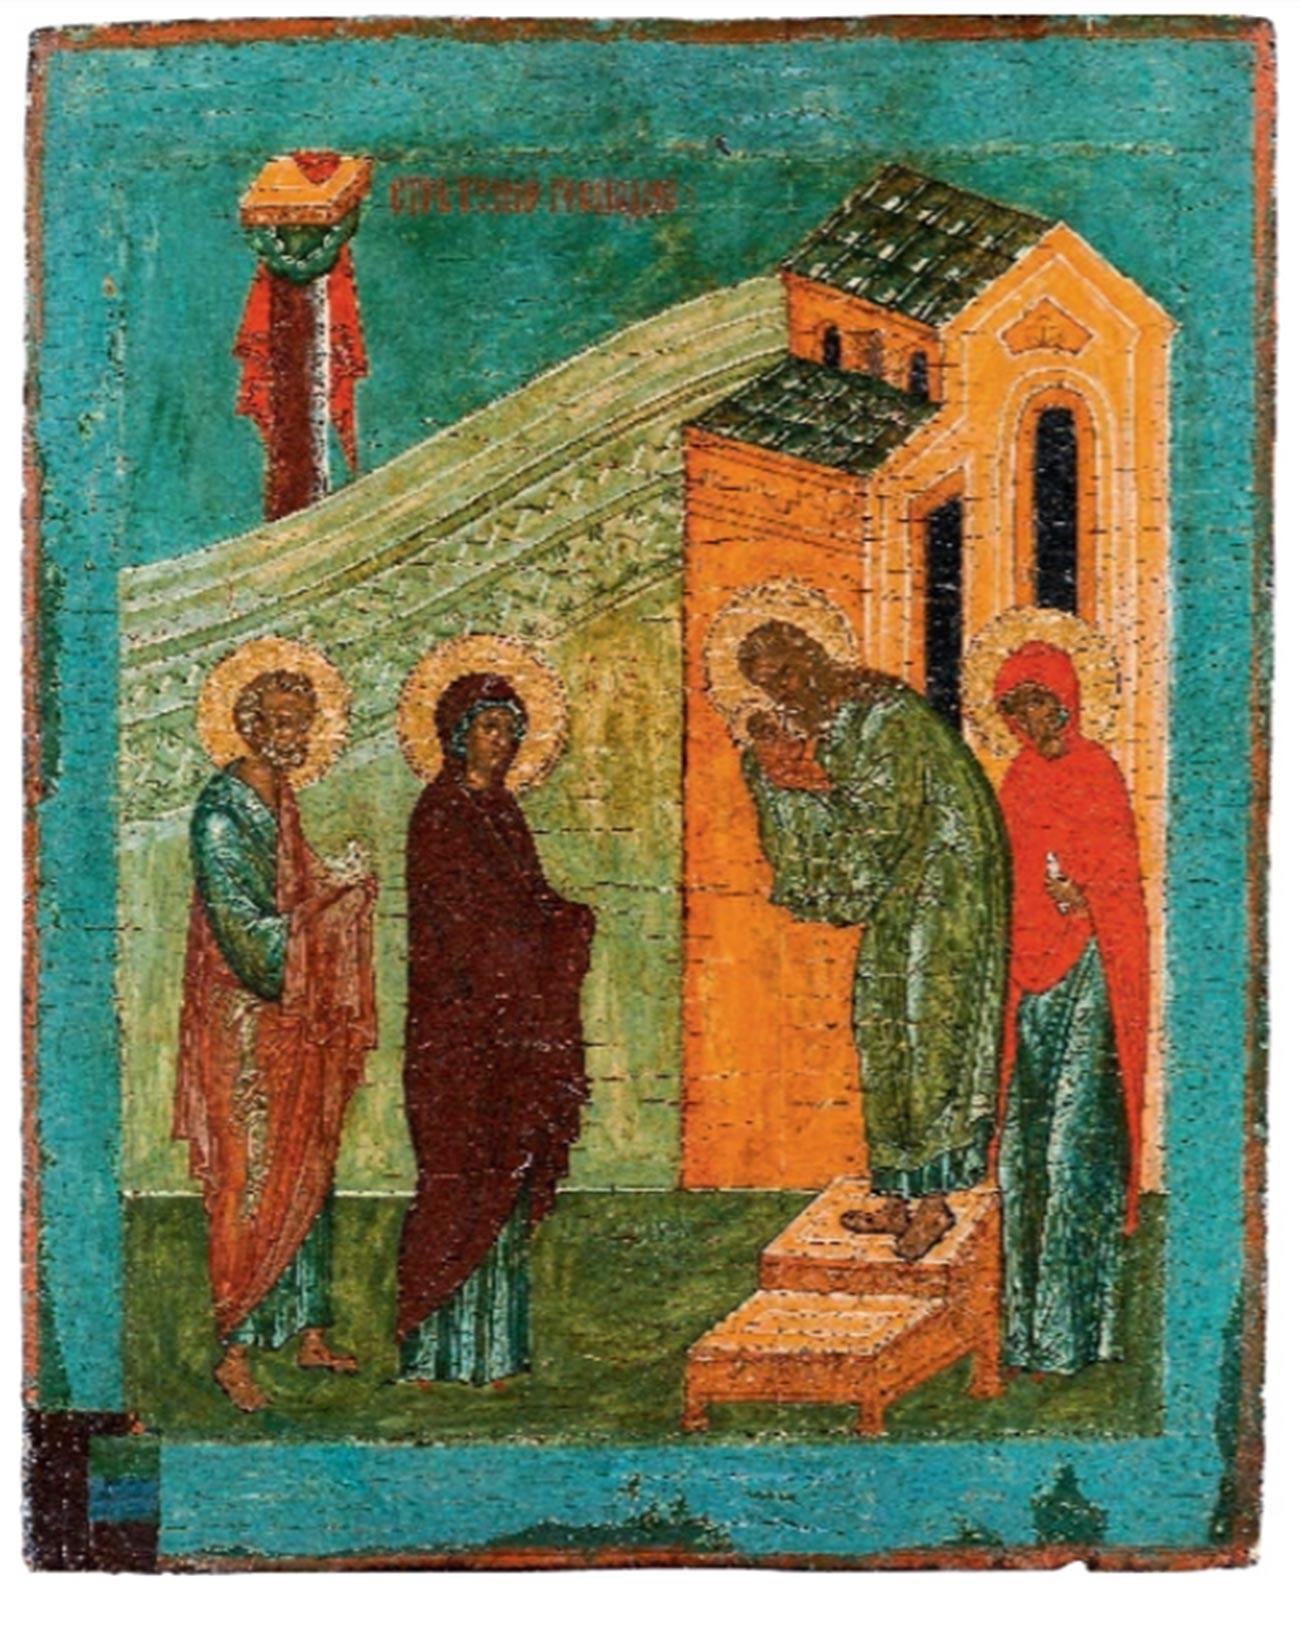 Ícone da “Introdução ao Templo da Abençoada Virgem Maria”.
